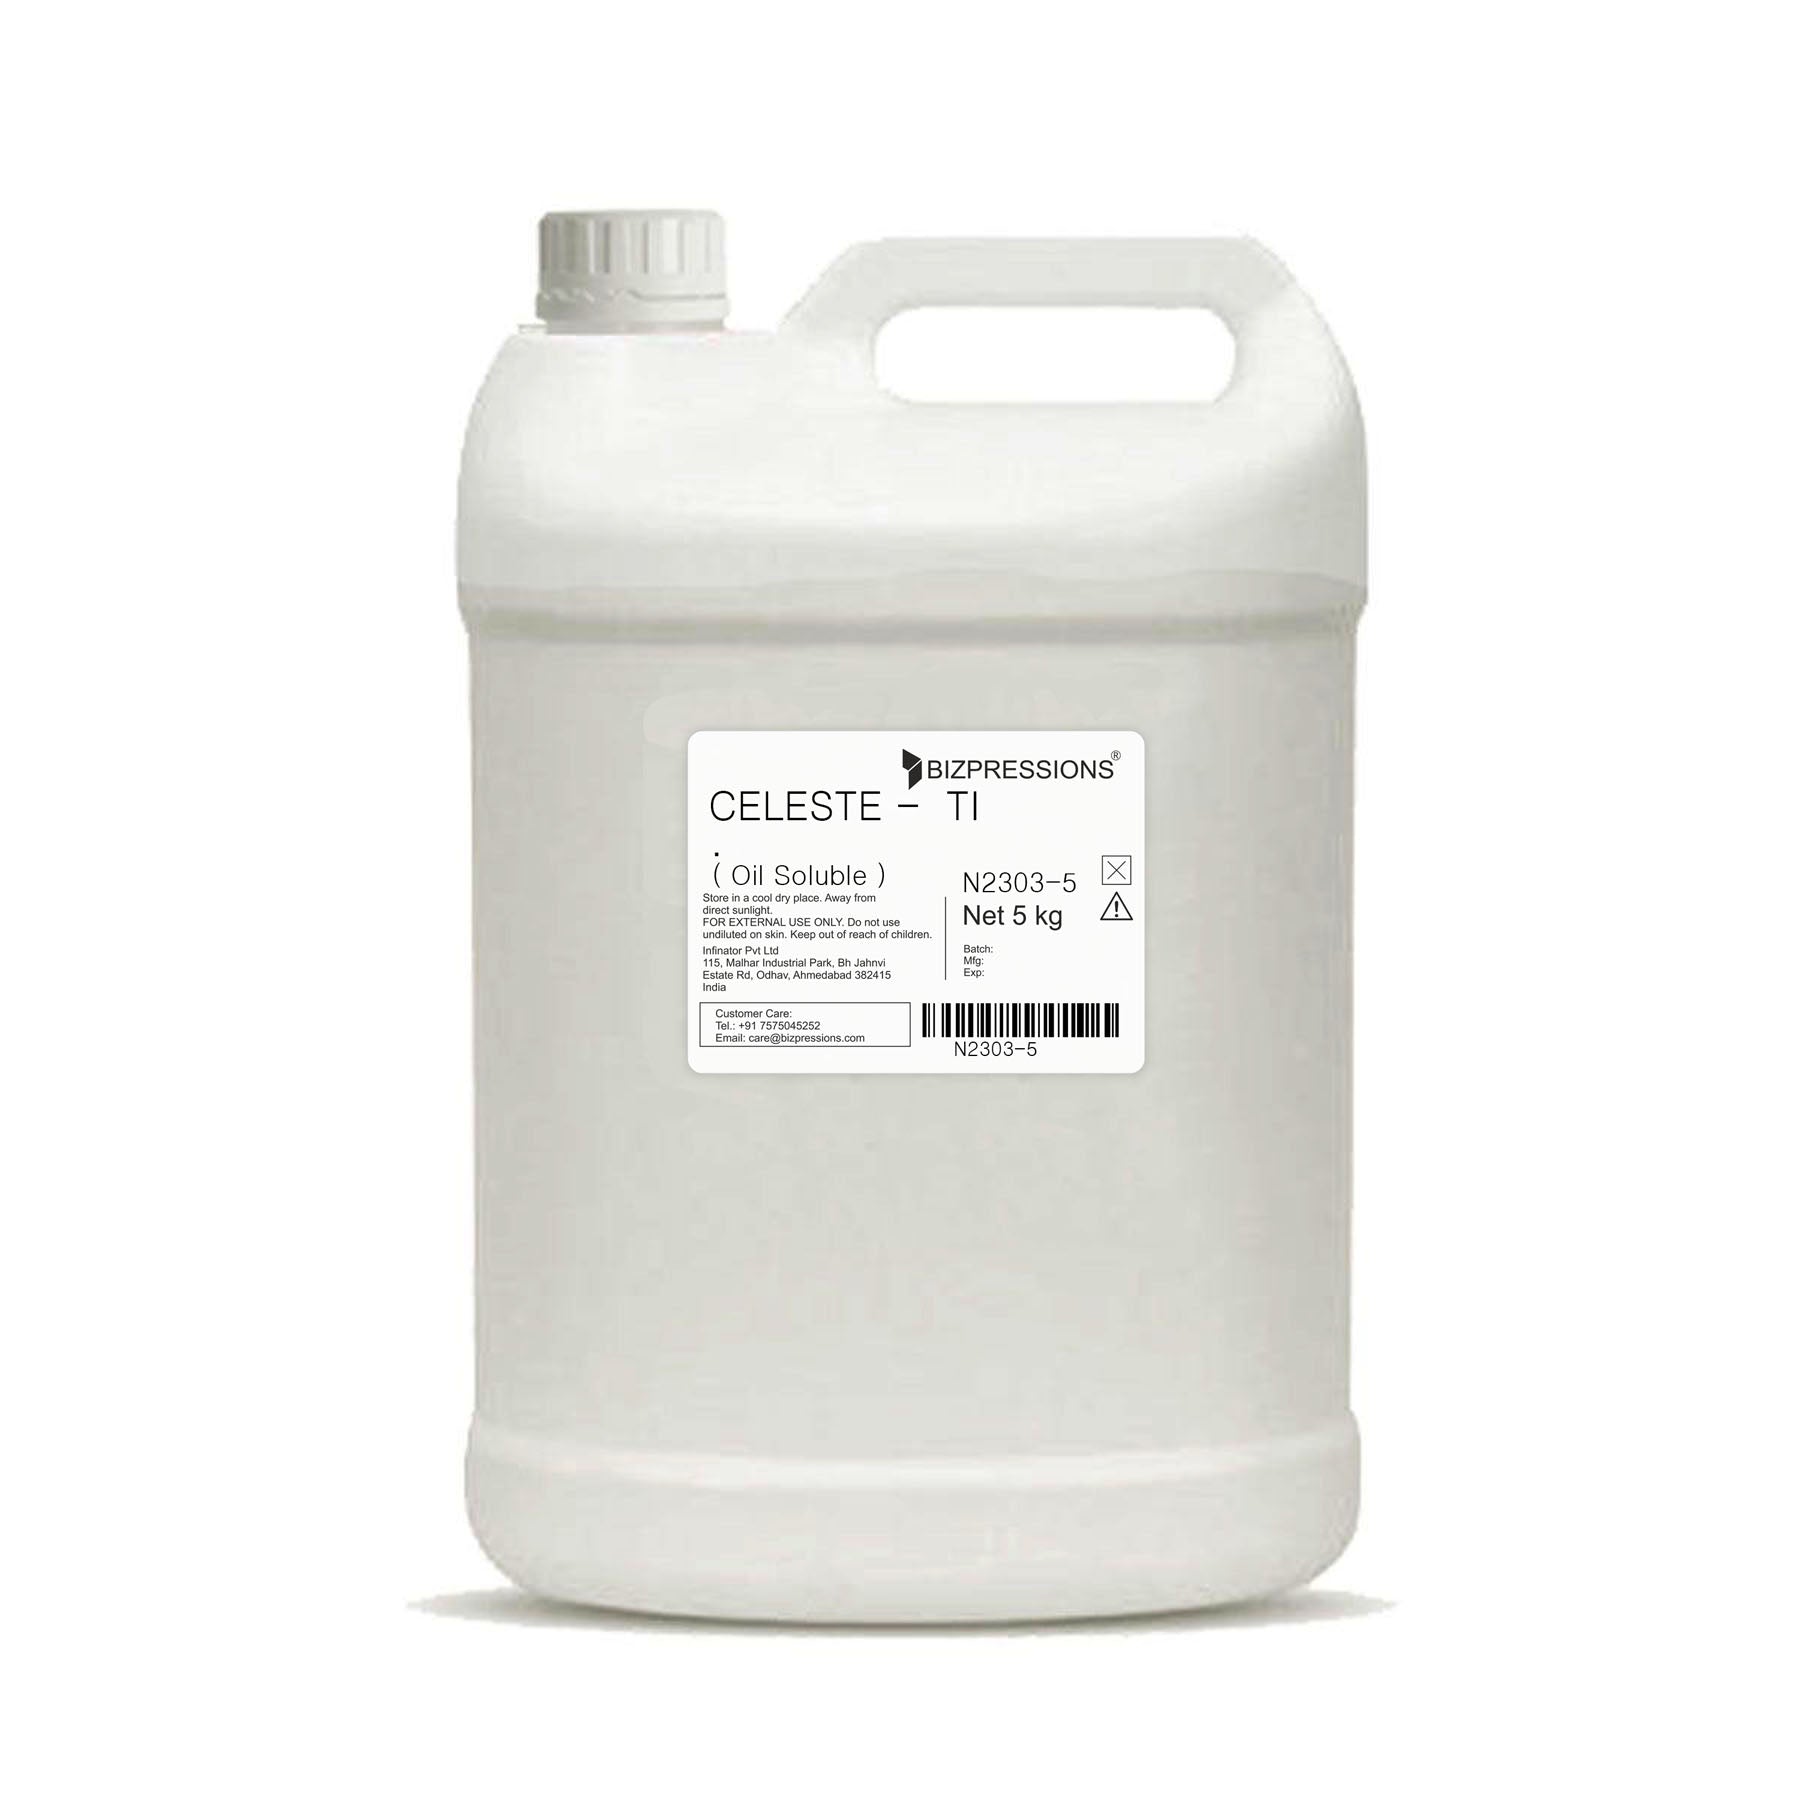 CELESTE - TI - Fragrance ( Oil Soluble ) - 5 kg